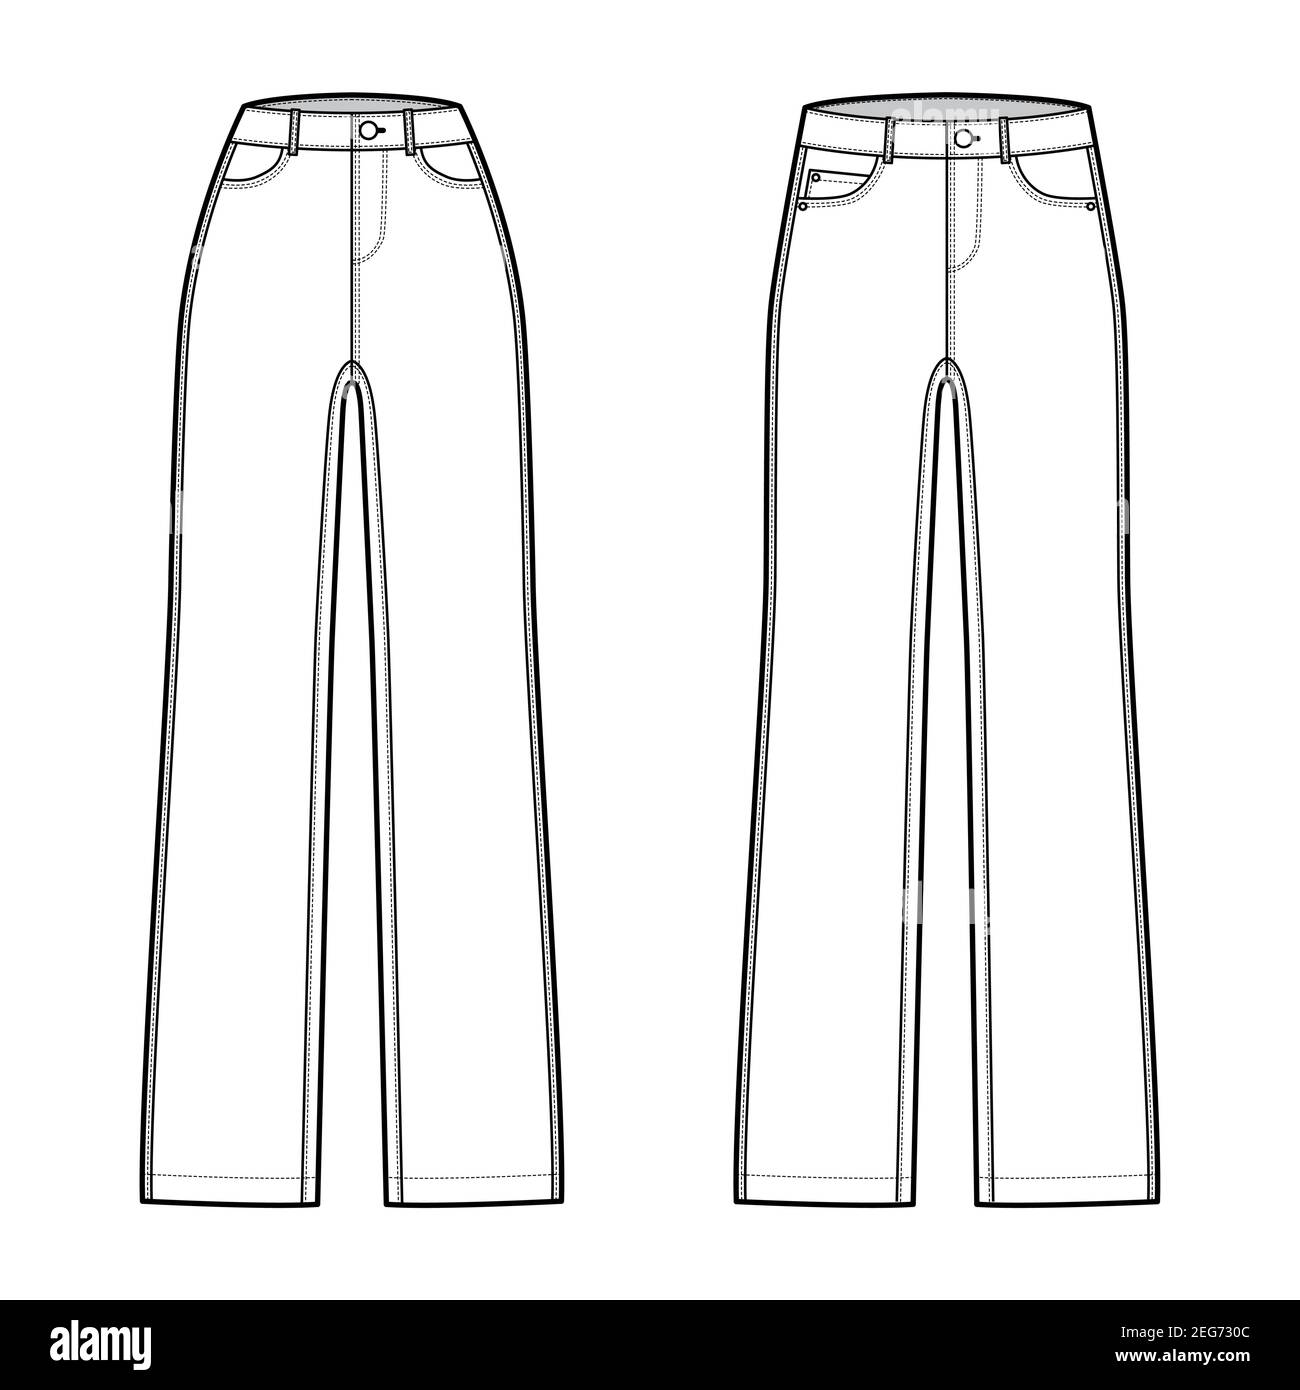 Juego de jeans rectos pantalones vaqueros ilustración técnica de moda con  longitud completa, cintura baja normal, talle alto, 5 bolsillos, remaches.  Plantilla plana frontal, estilo de color blanco. Mujeres, hombres, unisex  CAD